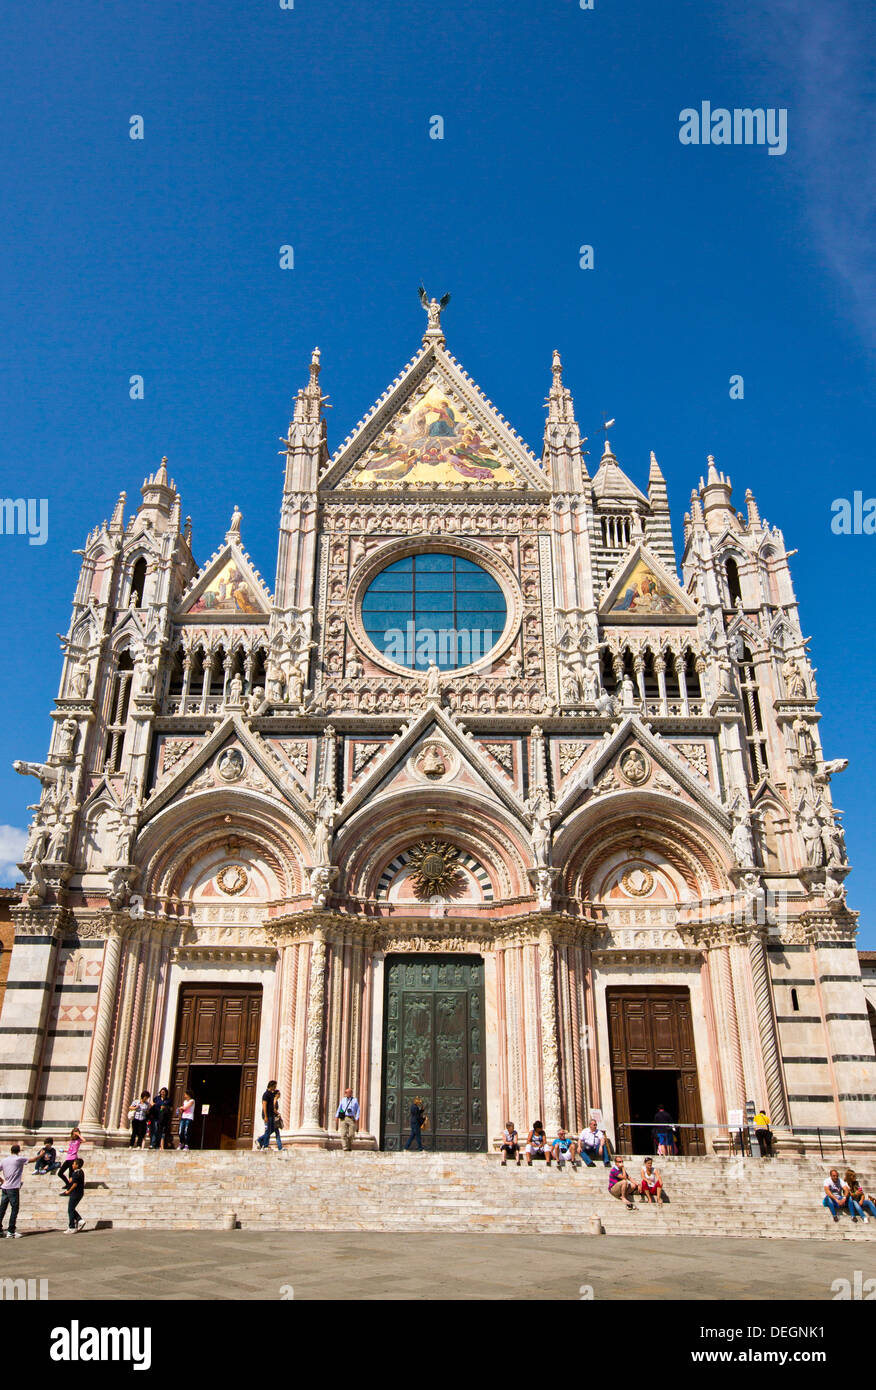 Façade d'une cathédrale, le Duomo di Siena, Sienne, Toscane, Italie Banque D'Images